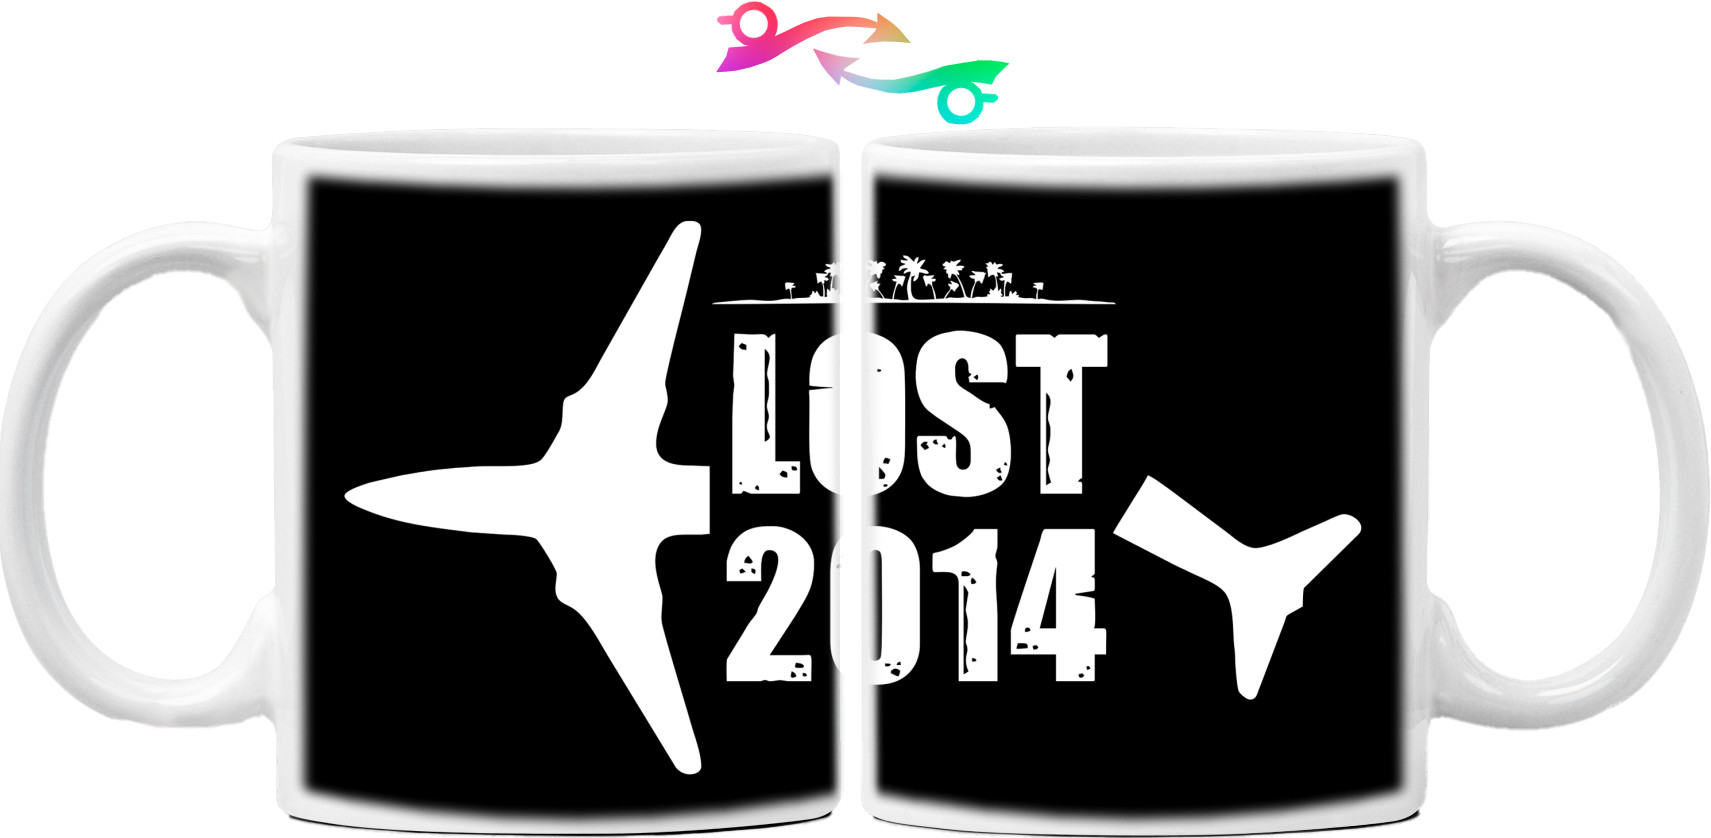 Lost 7